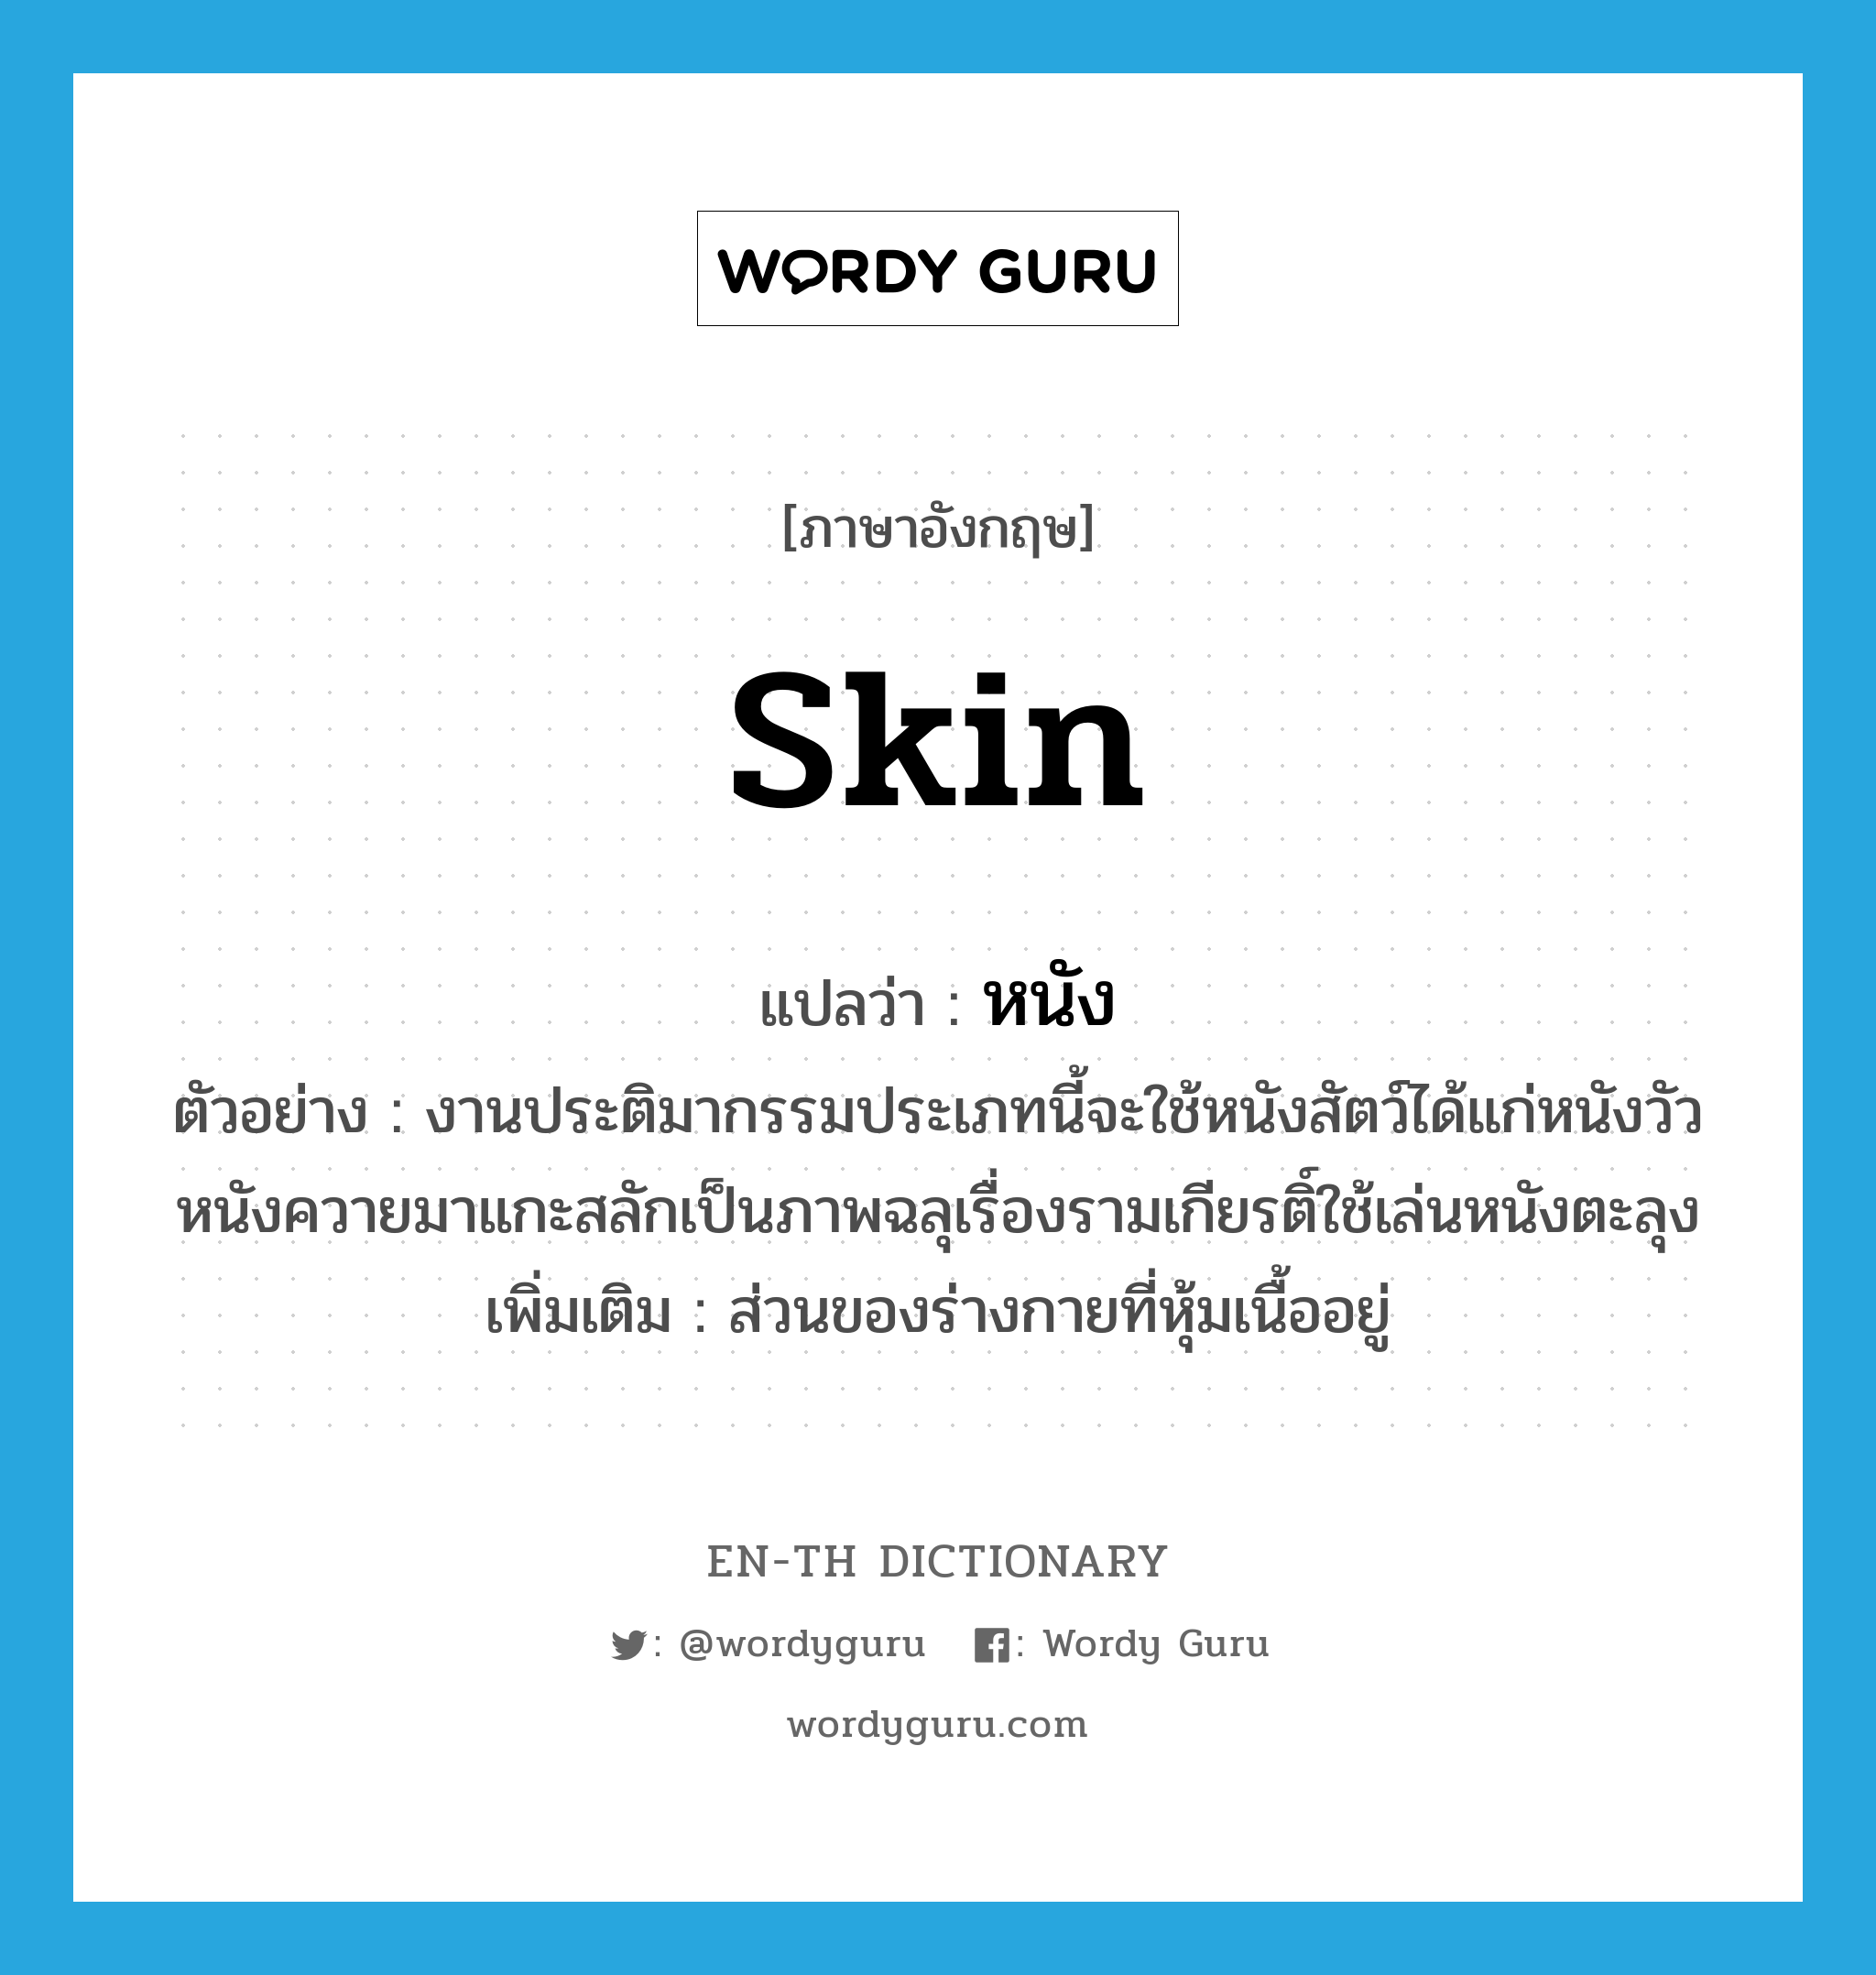 skin แปลว่า?, คำศัพท์ภาษาอังกฤษ skin แปลว่า หนัง ประเภท N ตัวอย่าง งานประติมากรรมประเภทนี้จะใช้หนังสัตว์ได้แก่หนังวัวหนังควายมาแกะสลักเป็นภาพฉลุเรื่องรามเกียรติ์ใช้เล่นหนังตะลุง เพิ่มเติม ส่วนของร่างกายที่หุ้มเนื้ออยู่ หมวด N